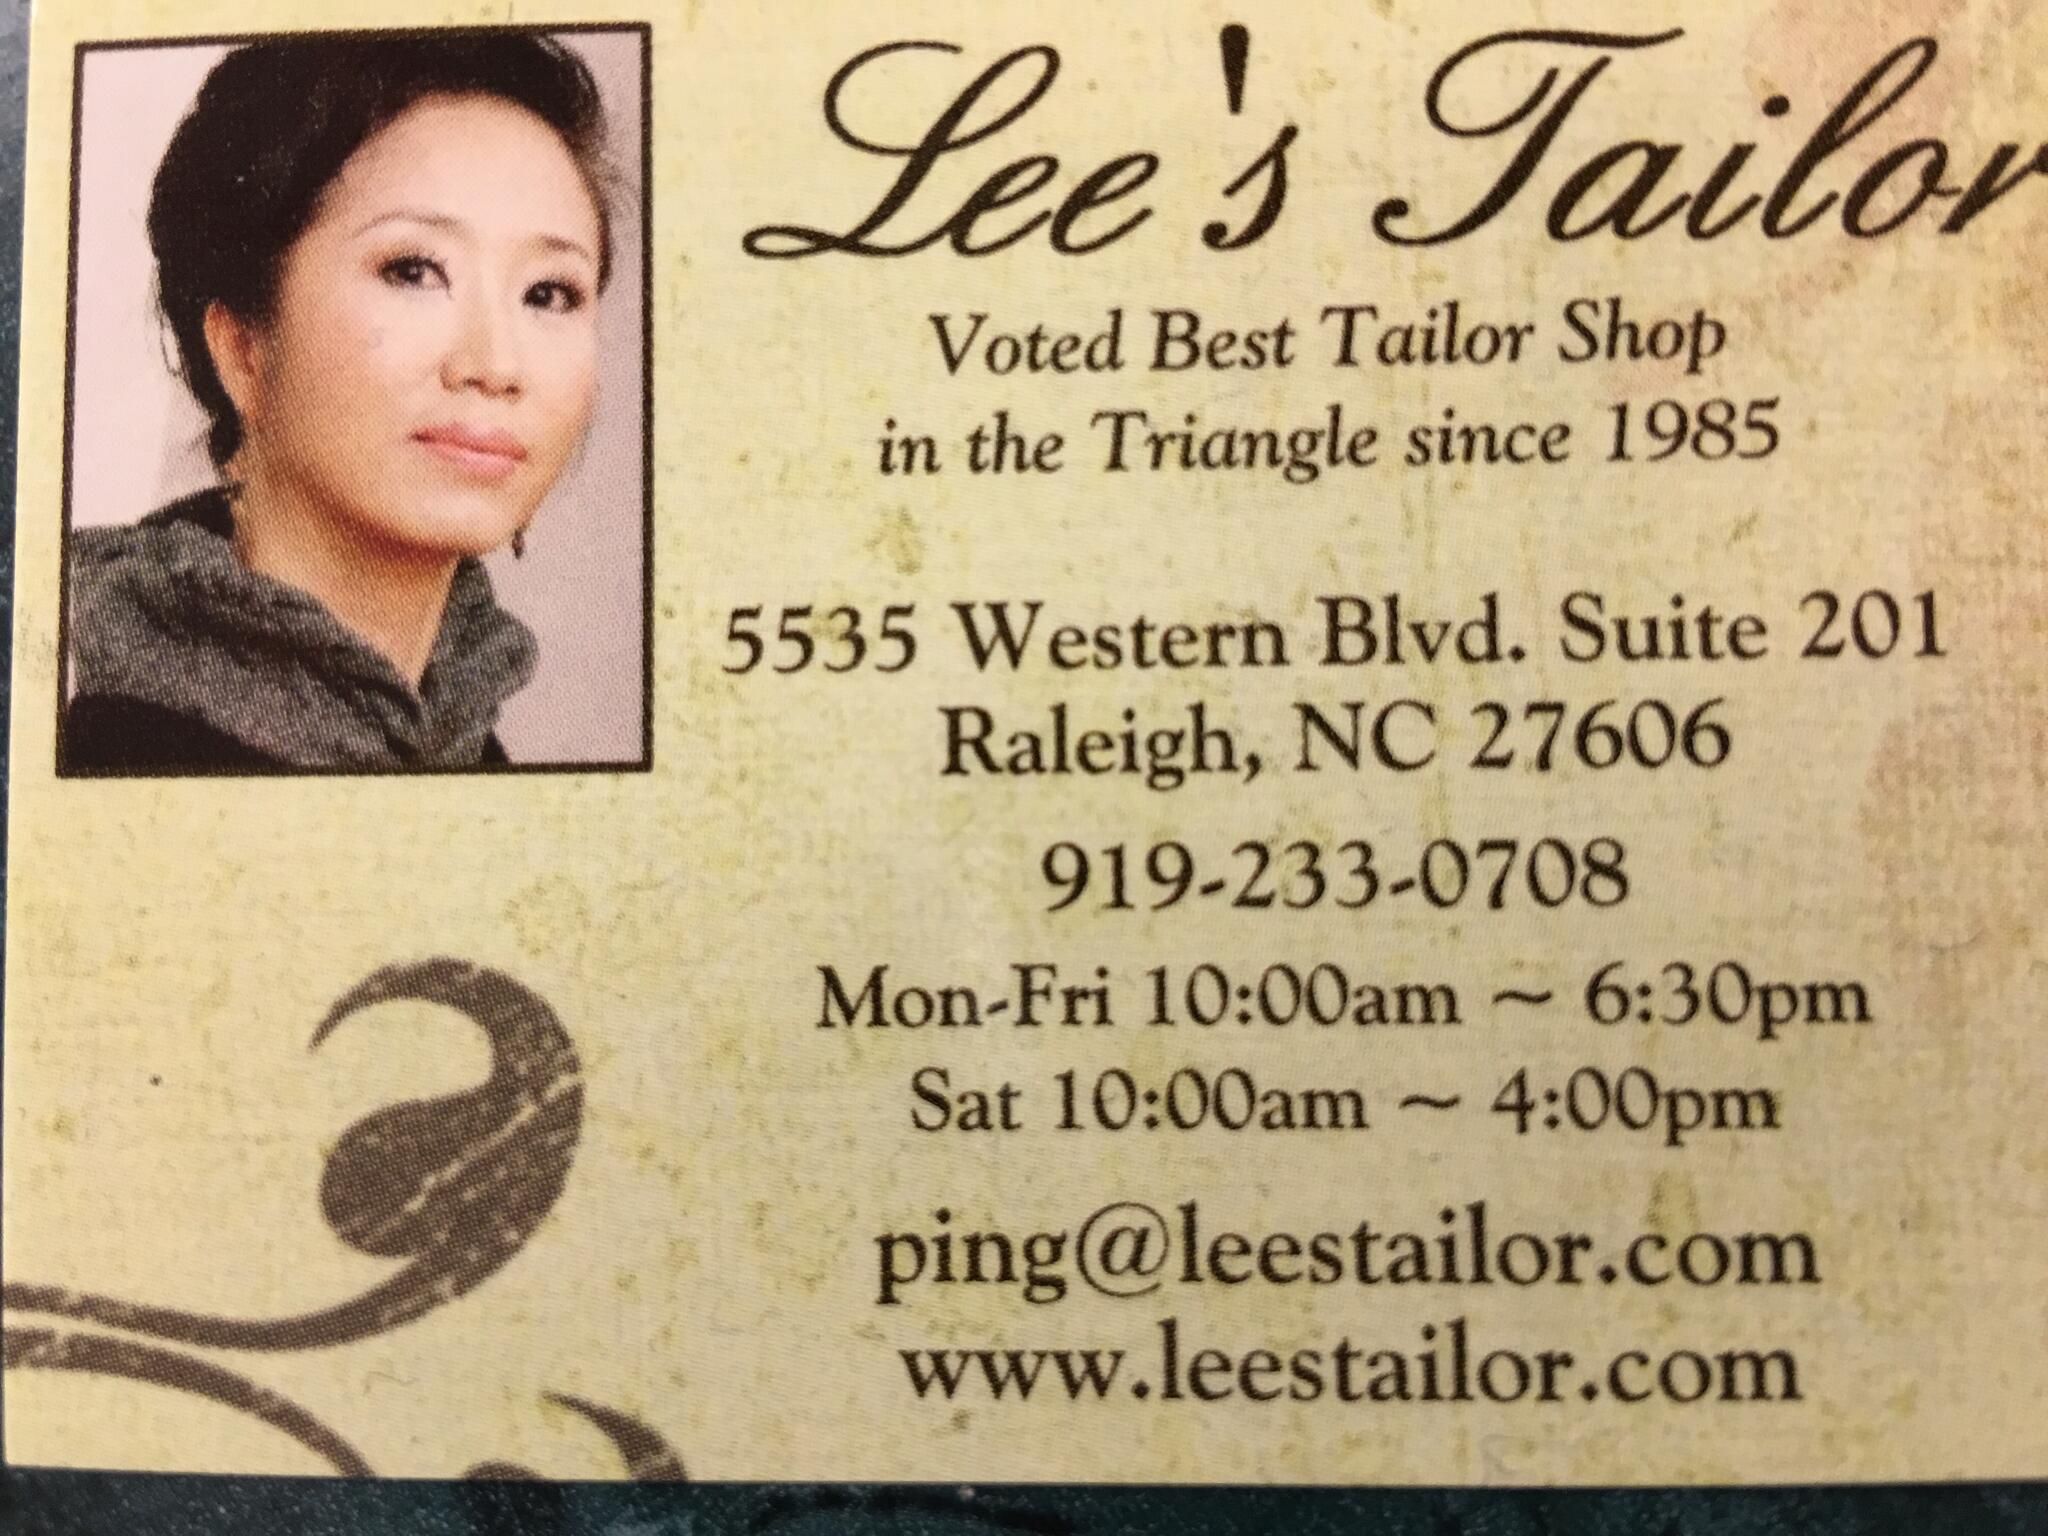 Lee's Tailor Shop - Raleigh, NC - Nextdoor